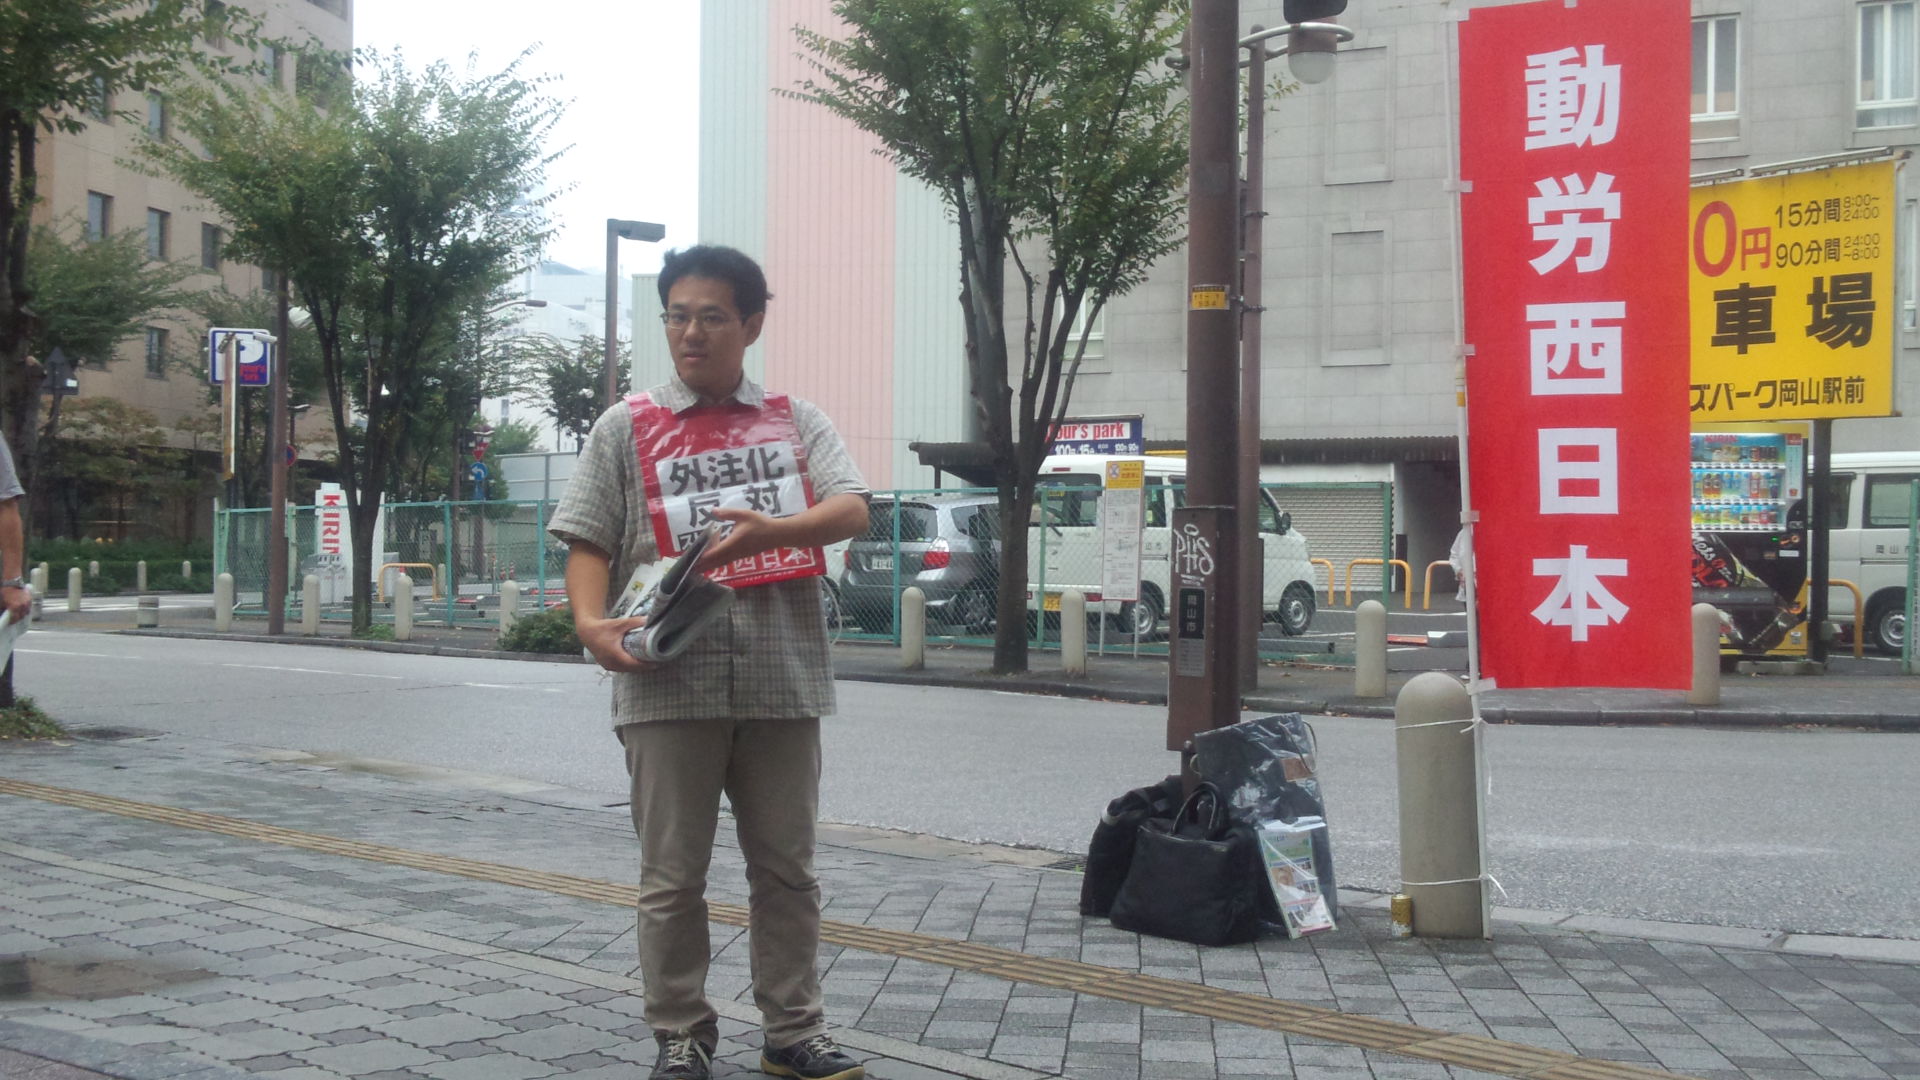 岡山駅東口で11月3日労働者集会のビラを配る_d0155415_9161114.jpg